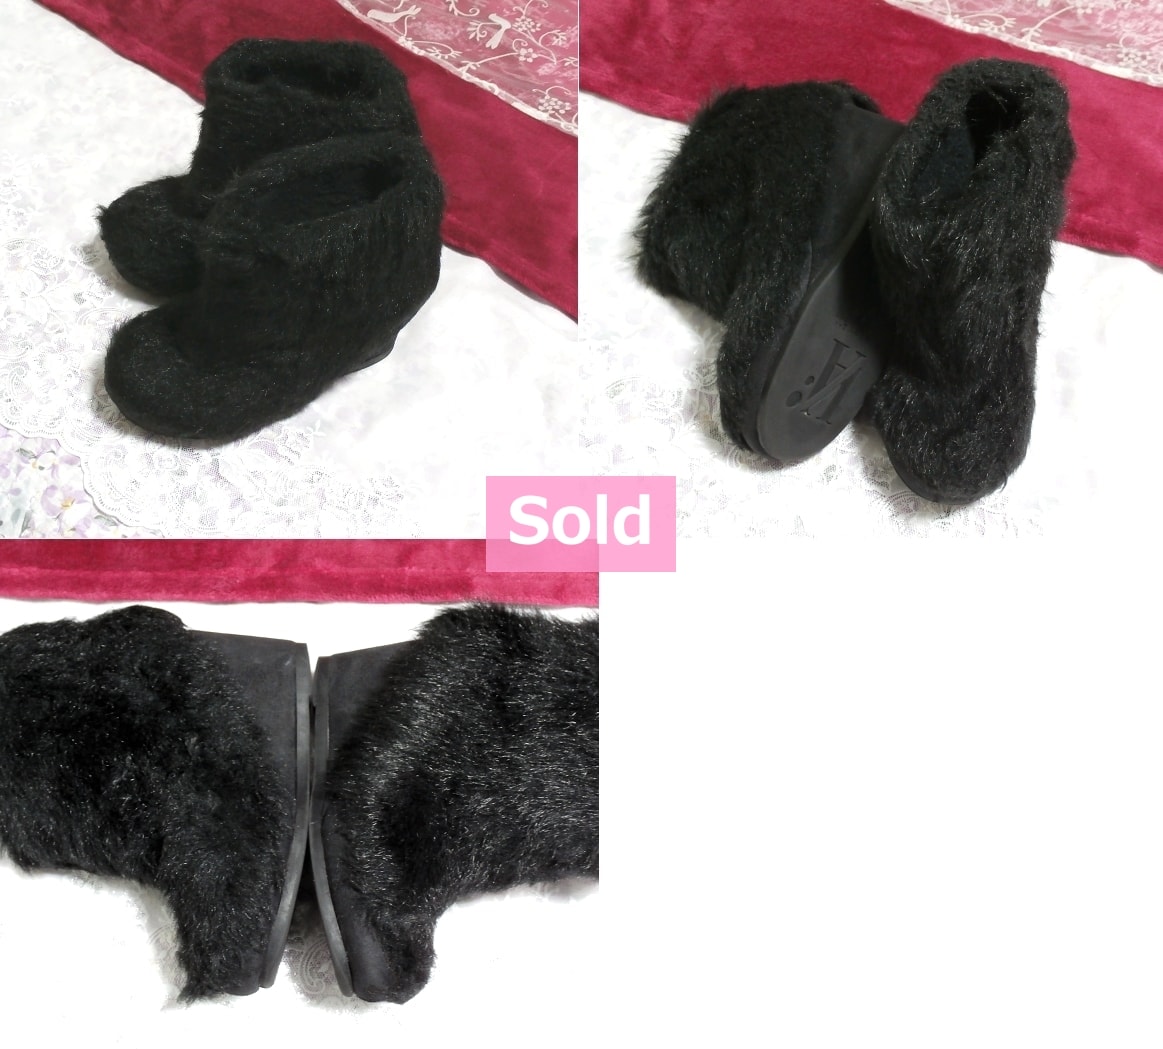 Negro negro esponjoso secreto 11cm / zapatos de plataforma para mujer / zapatos para habitaciones interiores Negro 4.33 in / zapatos de mujer de fondo grueso / sandalia / tacones altos